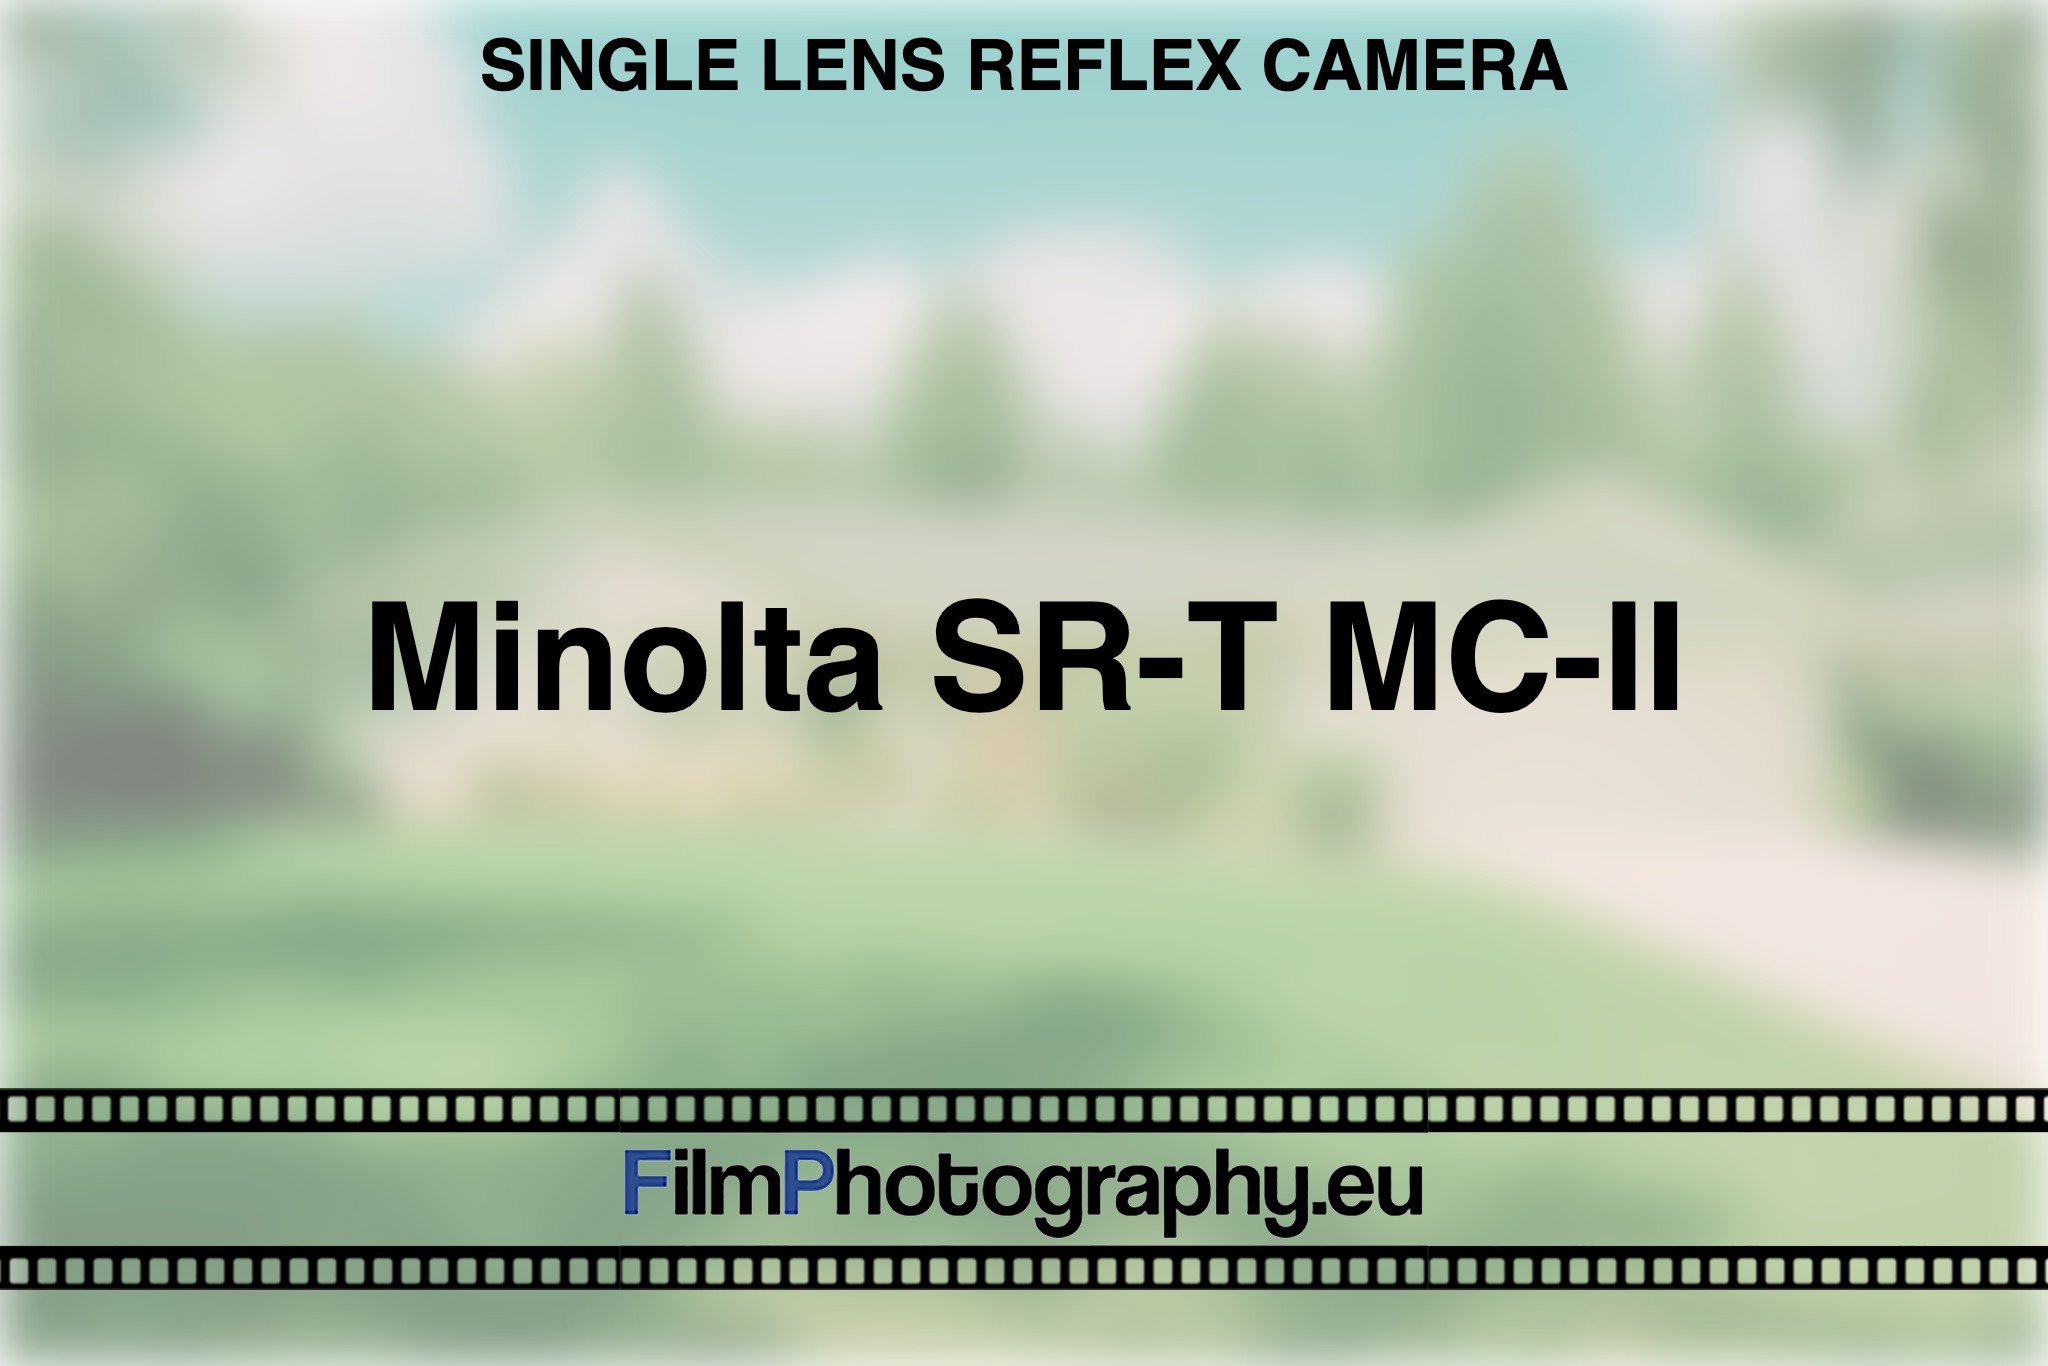 minolta-sr-t-mc-ii-single-lens-reflex-camera-bnv